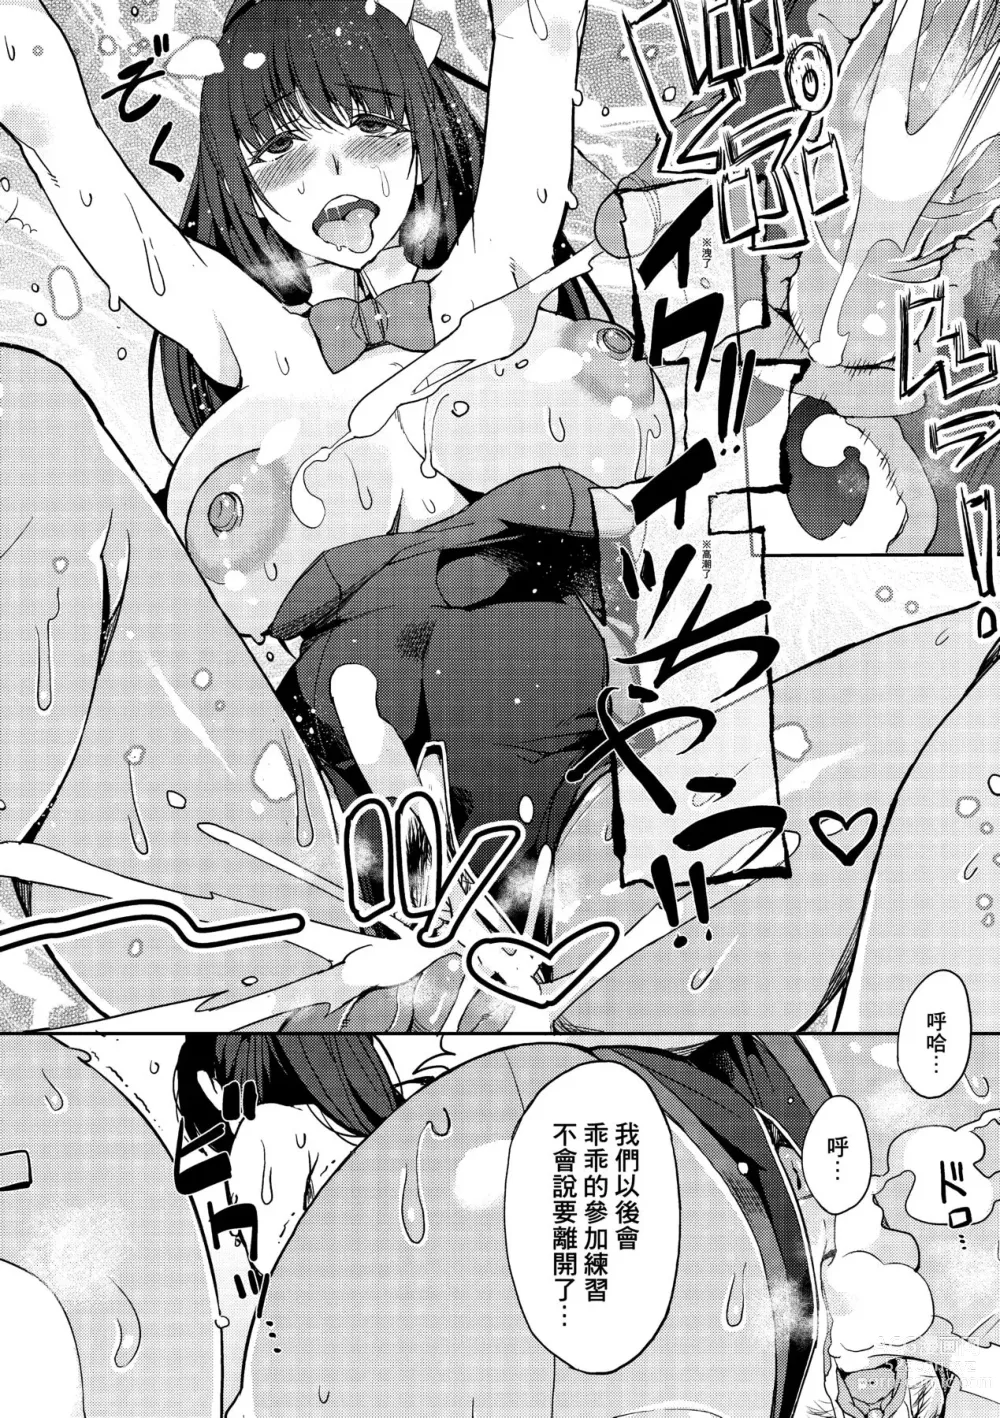 Page 193 of manga Kyou kara Kimi no Dorei (decensored)